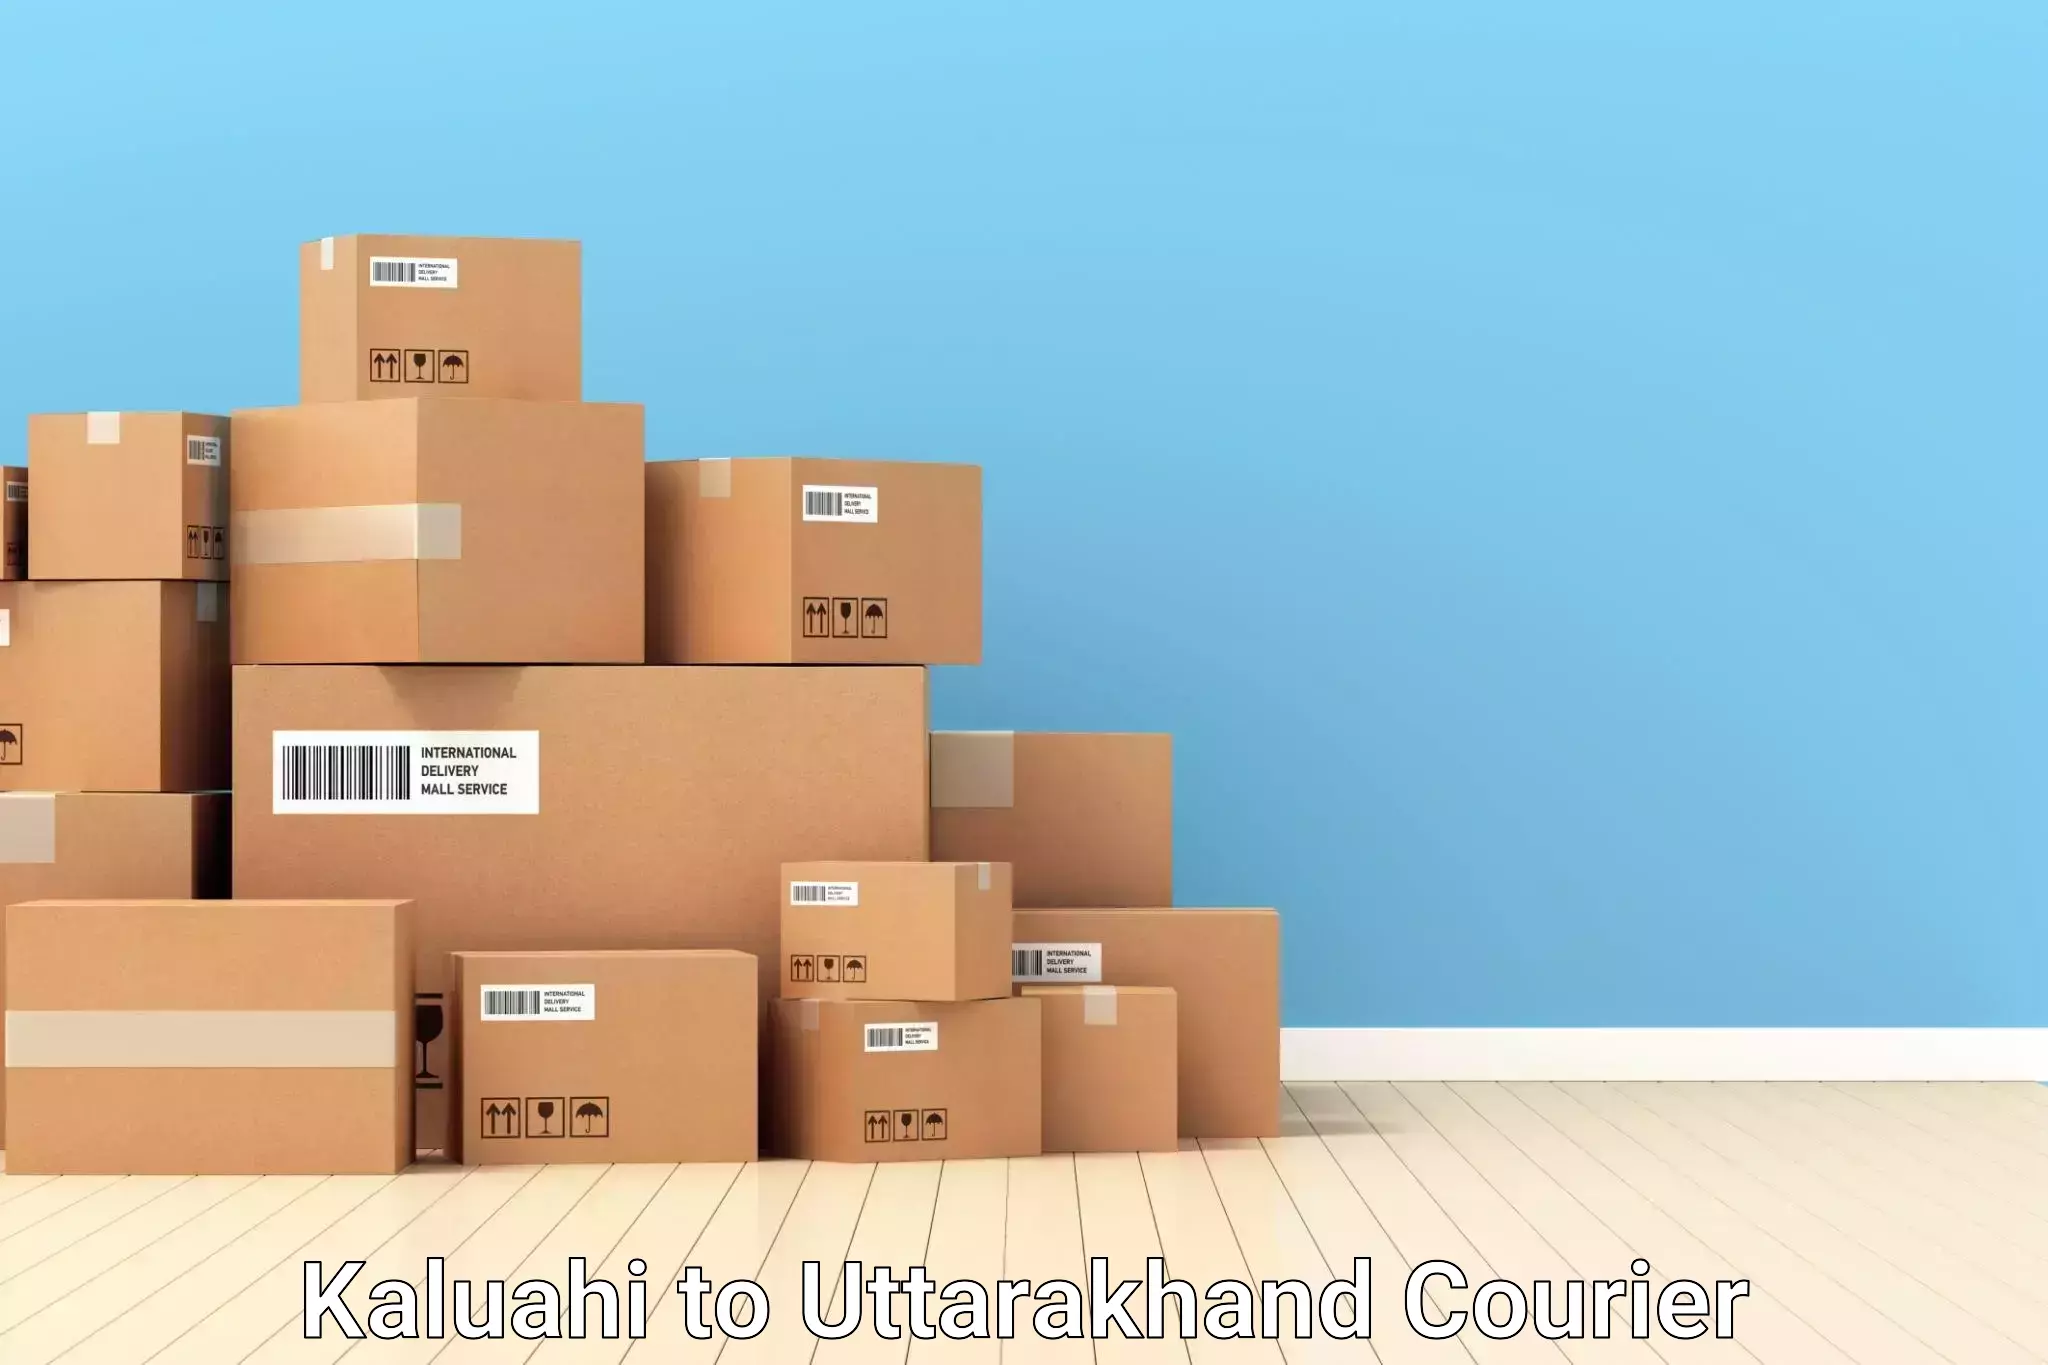 Luggage delivery app Kaluahi to Lansdowne